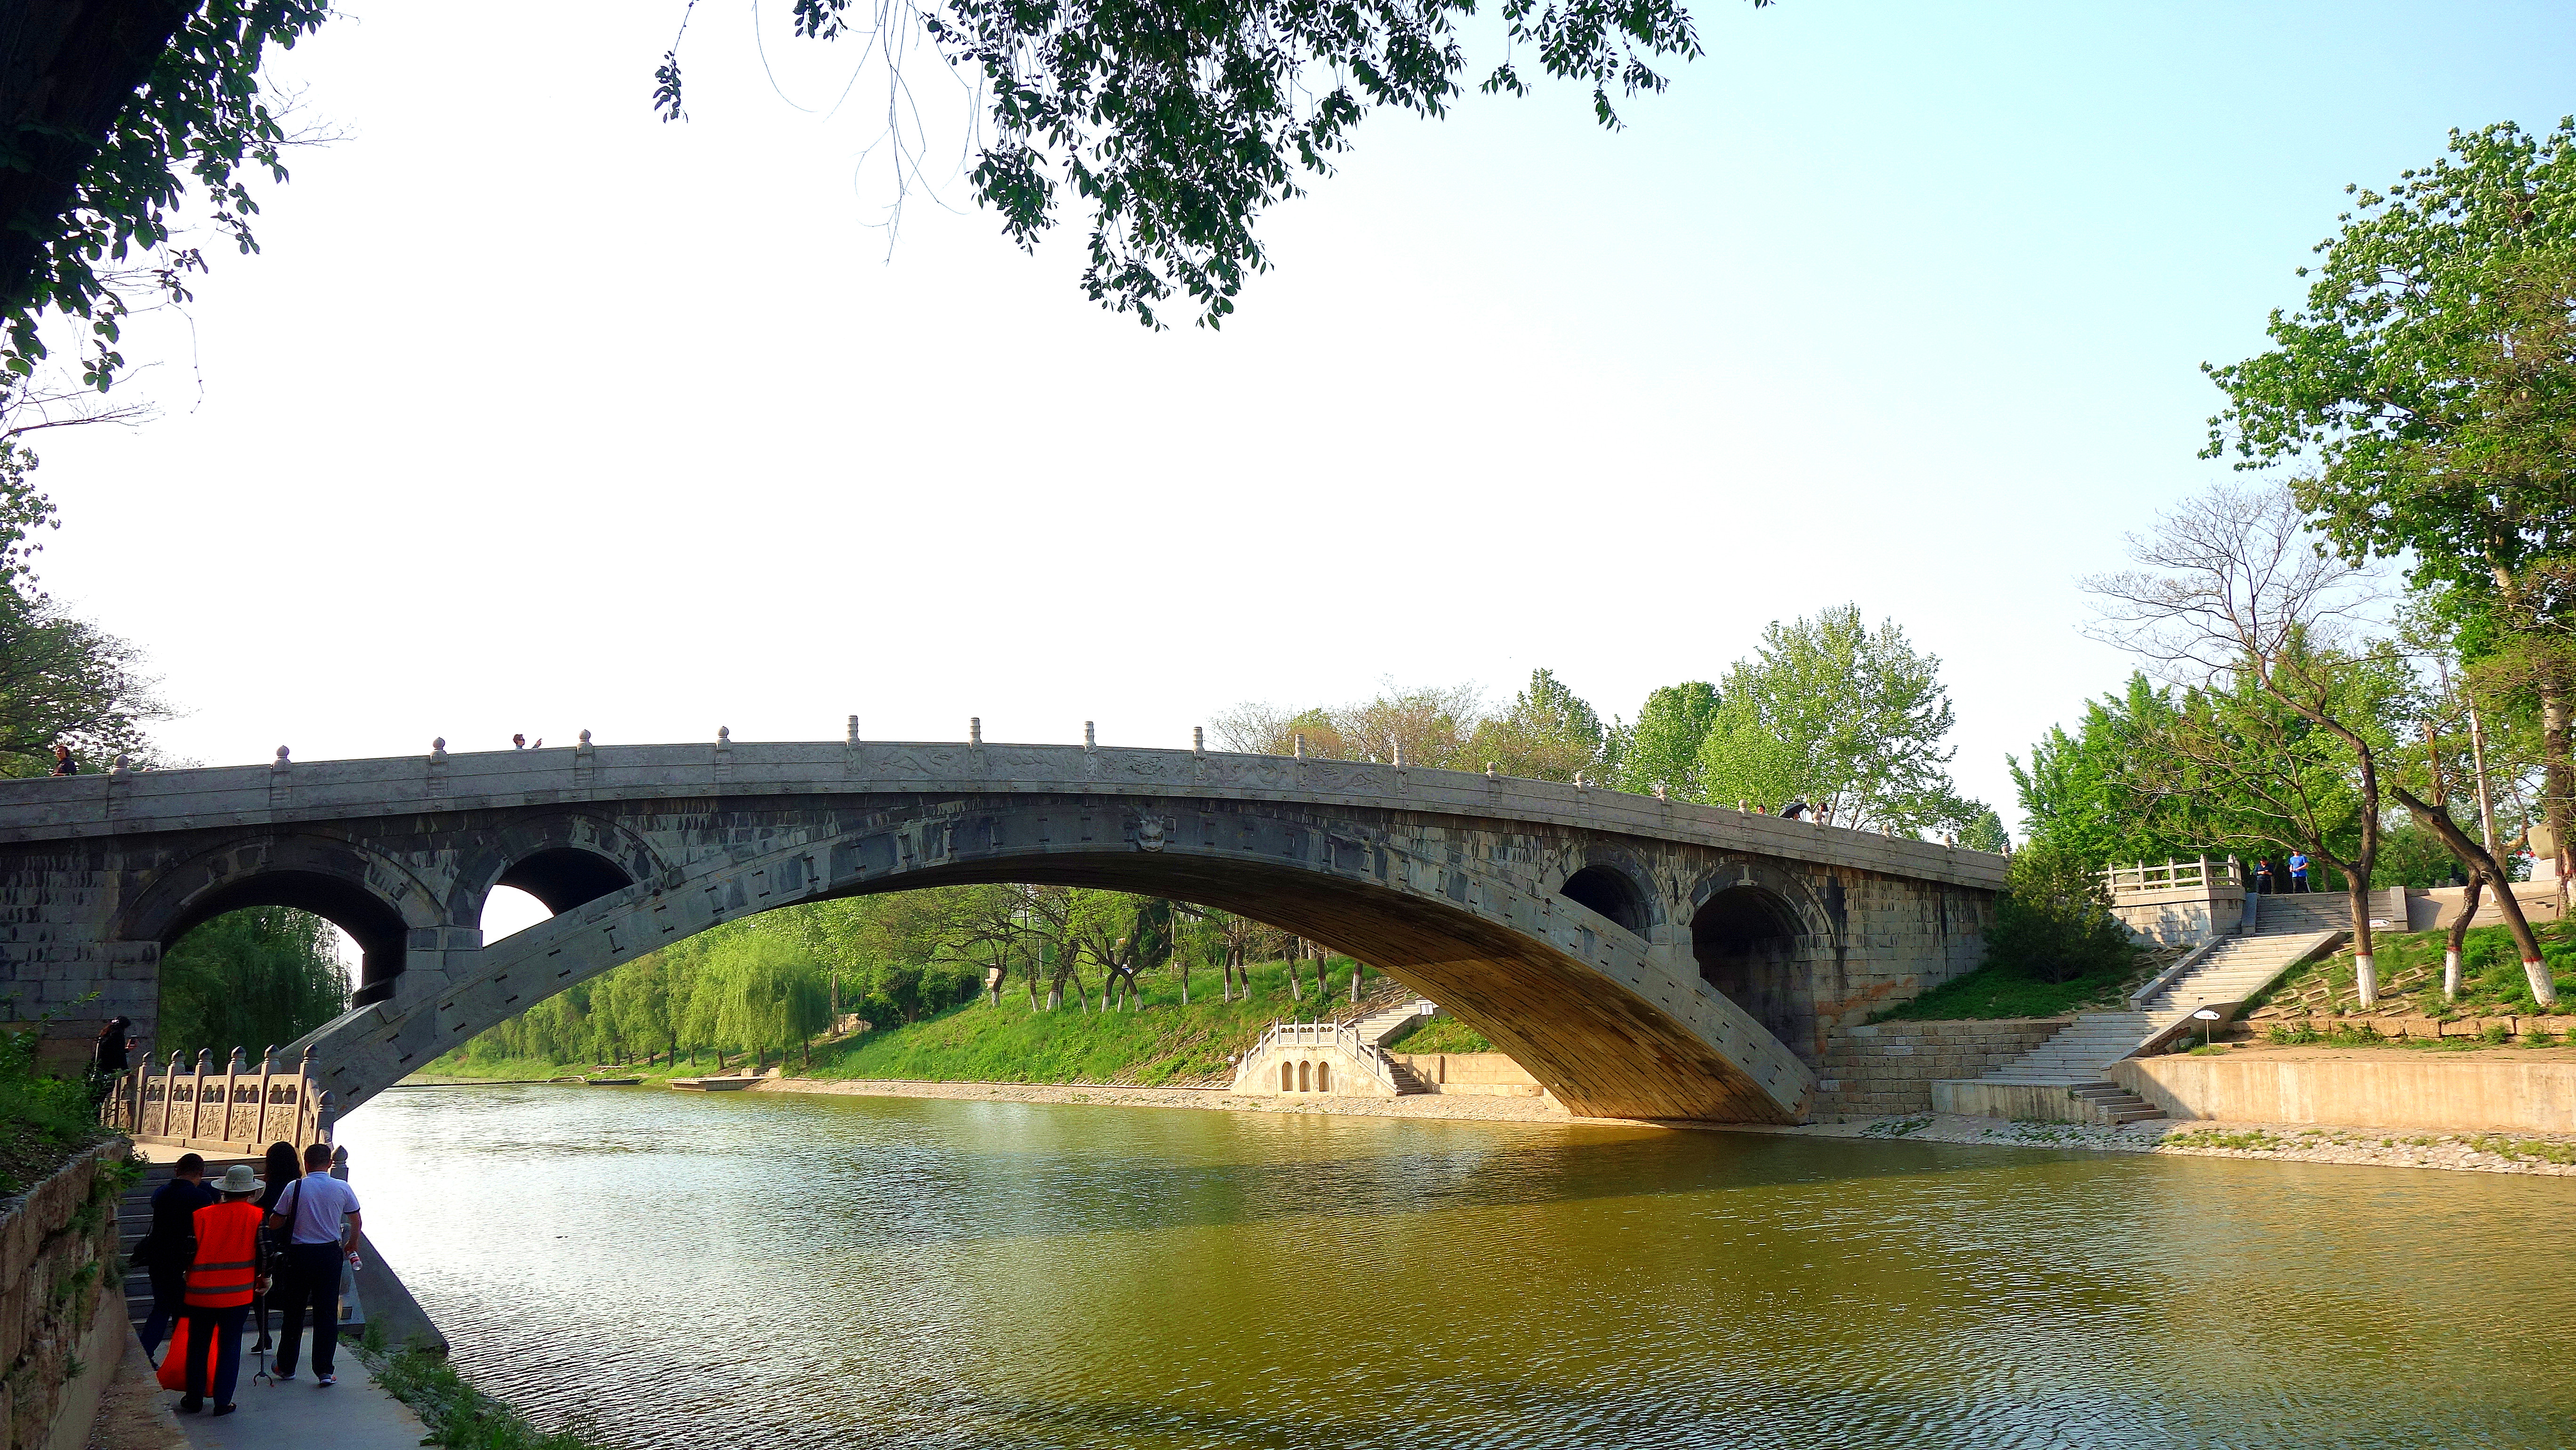 它是世界上现存最古老,跨度最大的单孔圆弧敞肩石拱桥,全用青石砌成